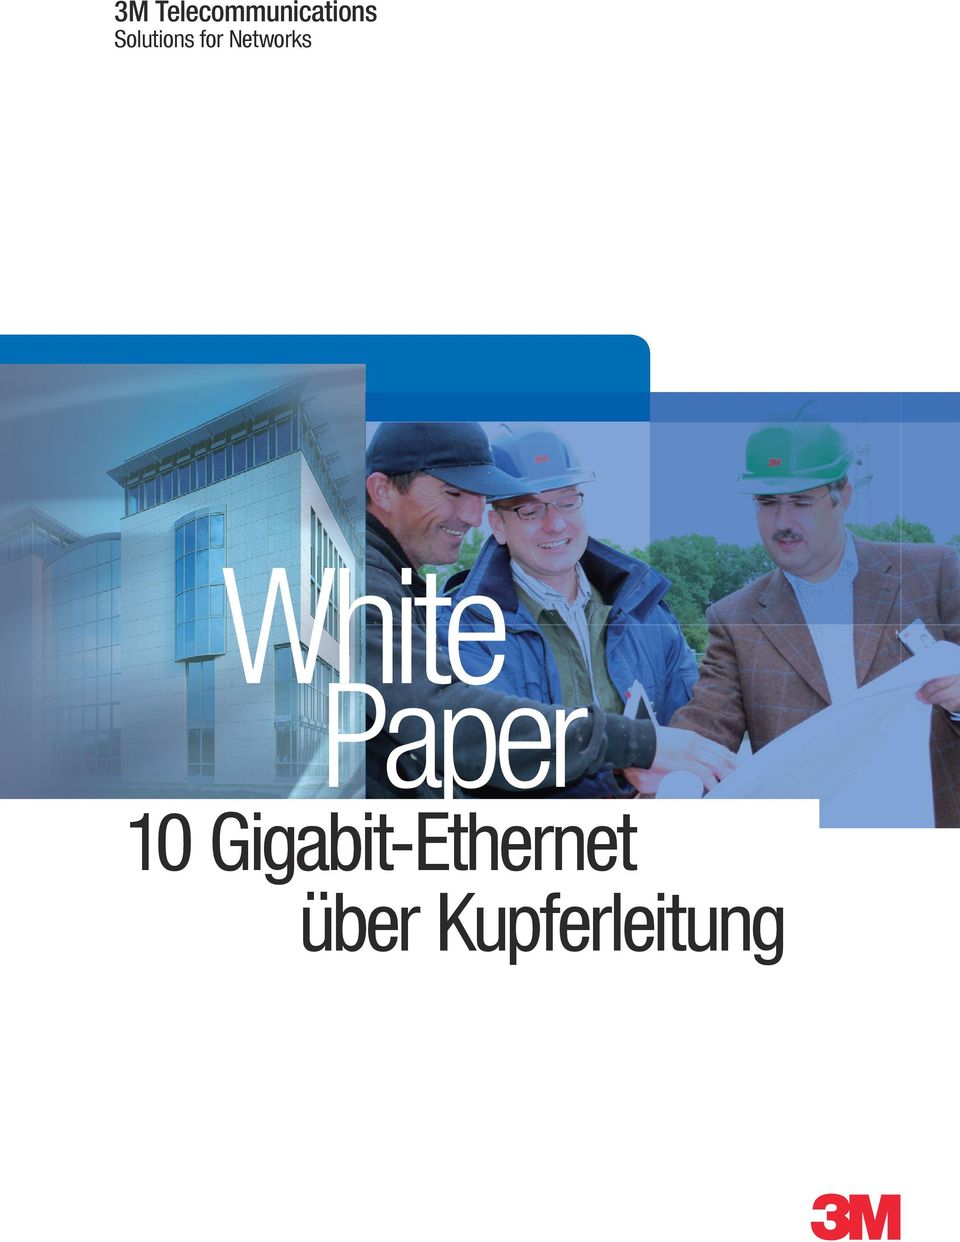 White Paper 10